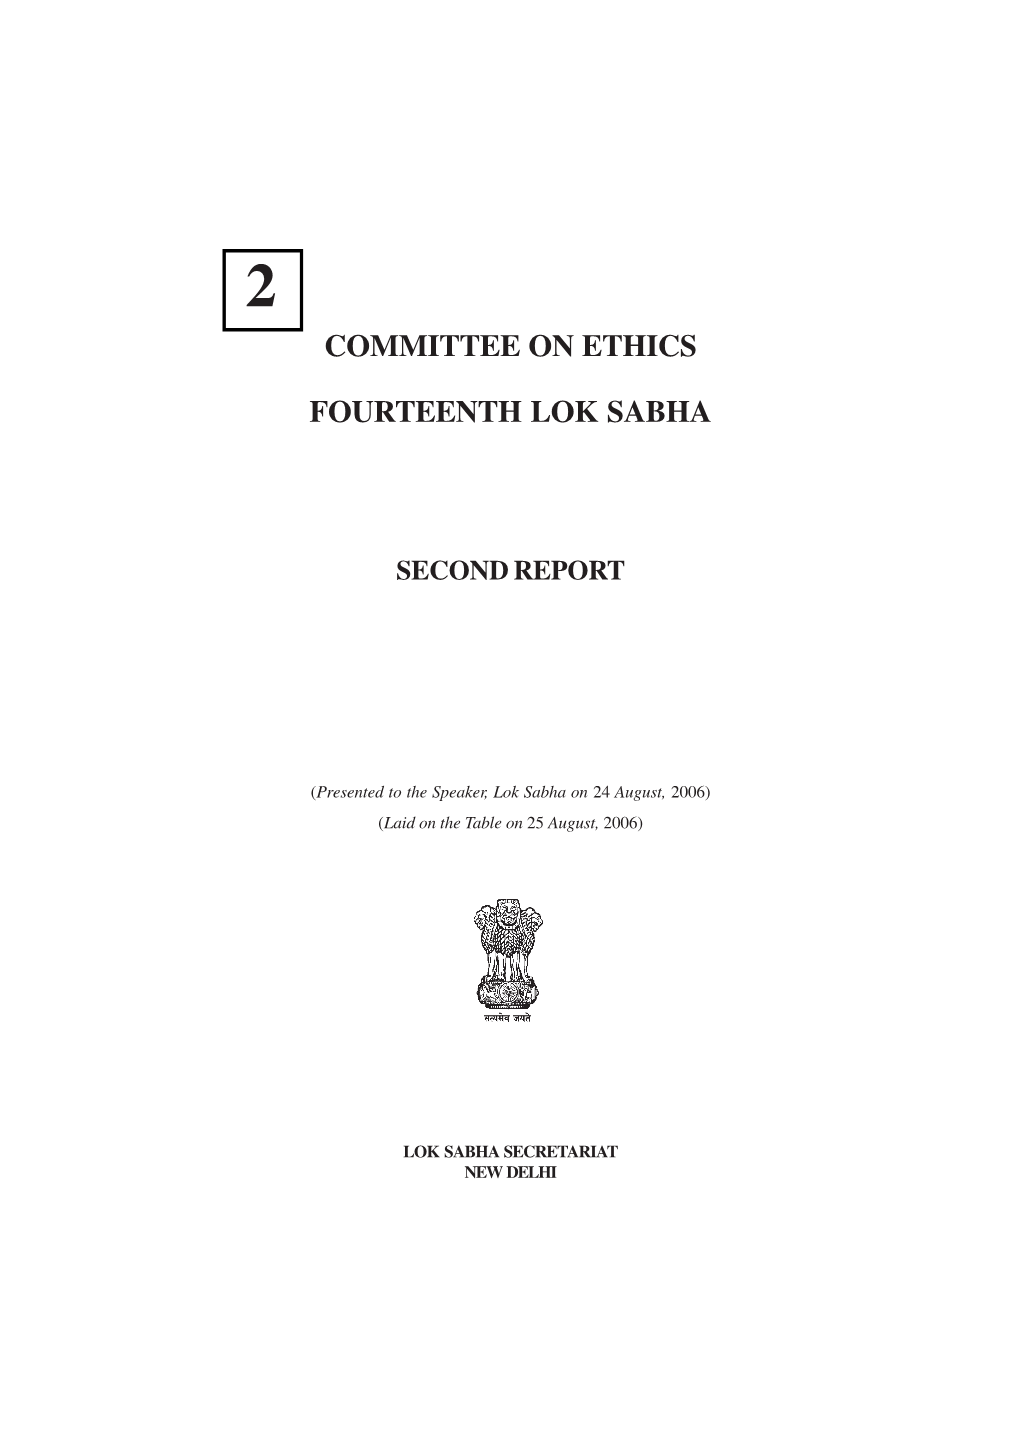 Committee on Ethics Fourteenth Lok Sabha